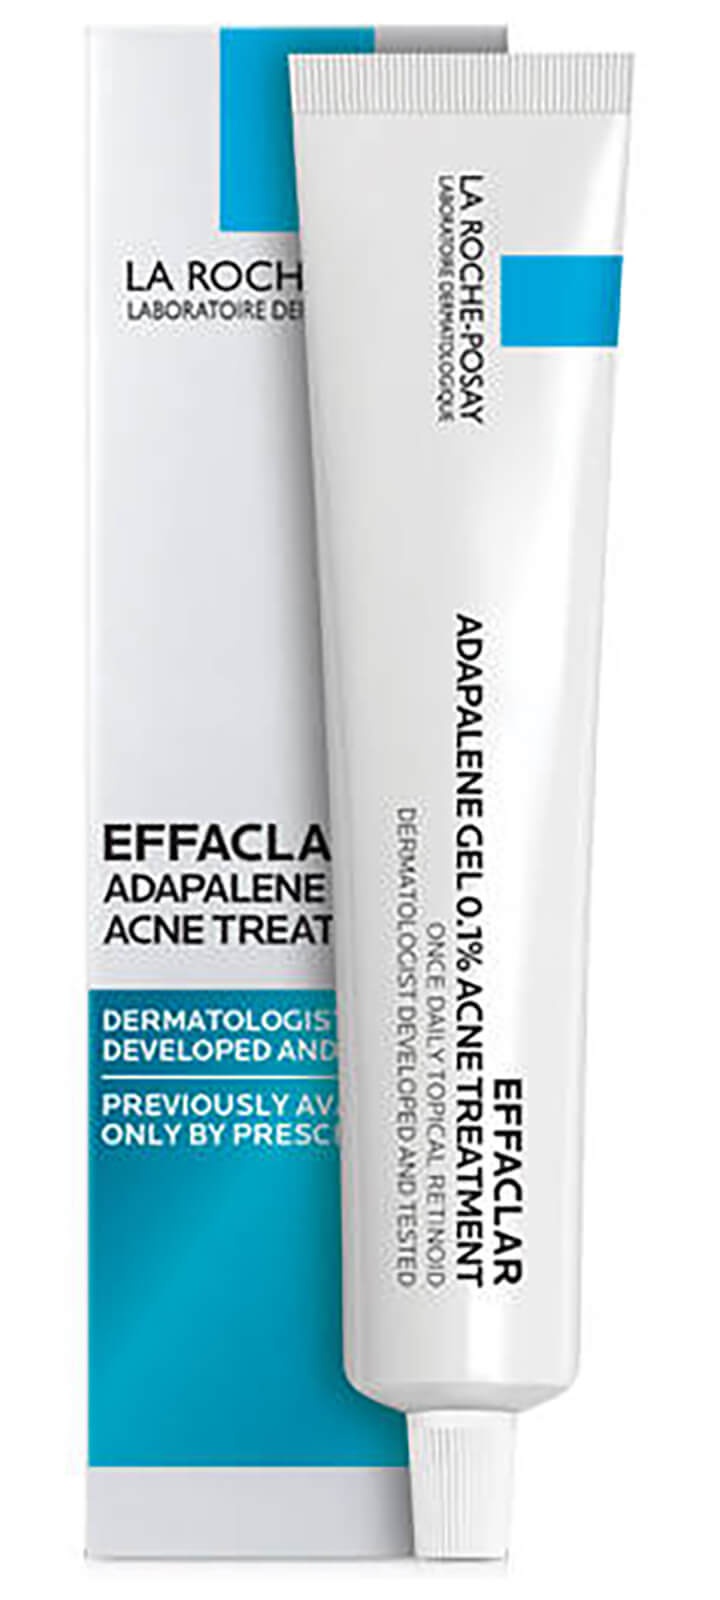 La Roche-Posay Effaclar Adapalene Gel 0.1% Retinoid Acne Treatment